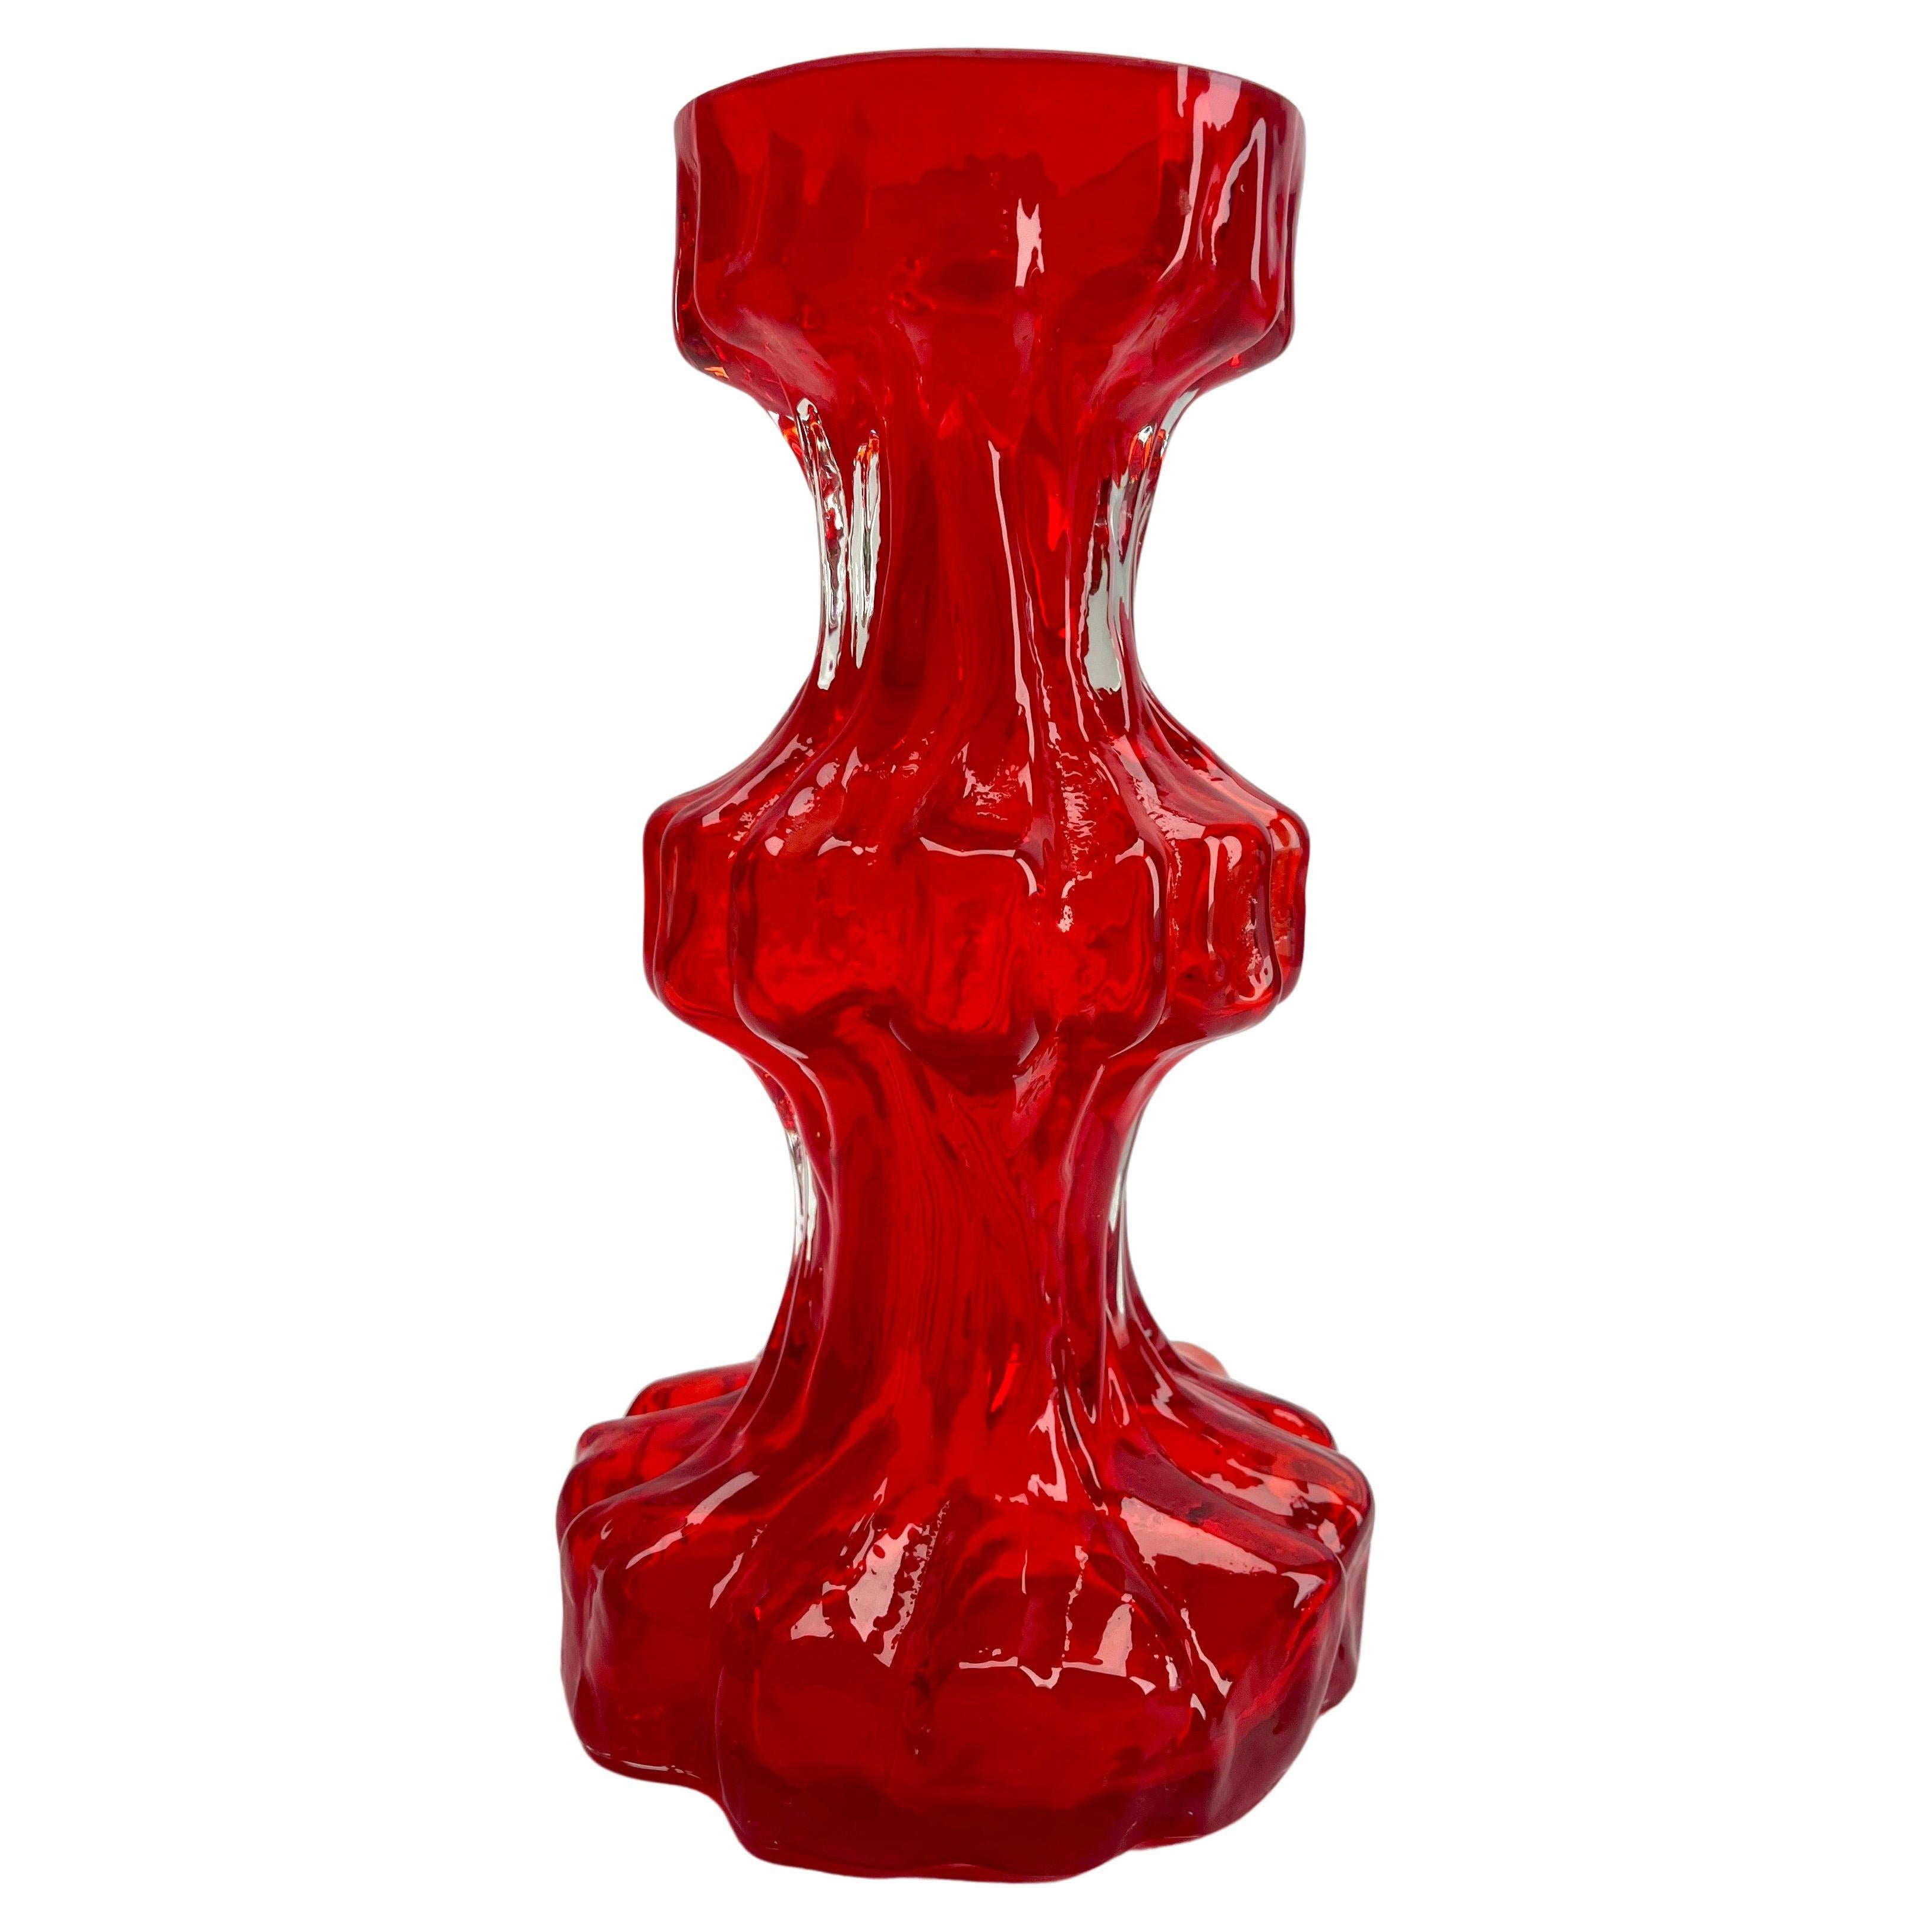 Ingrid Glas ‘Germany’ Bark Vase in Red, 1970s